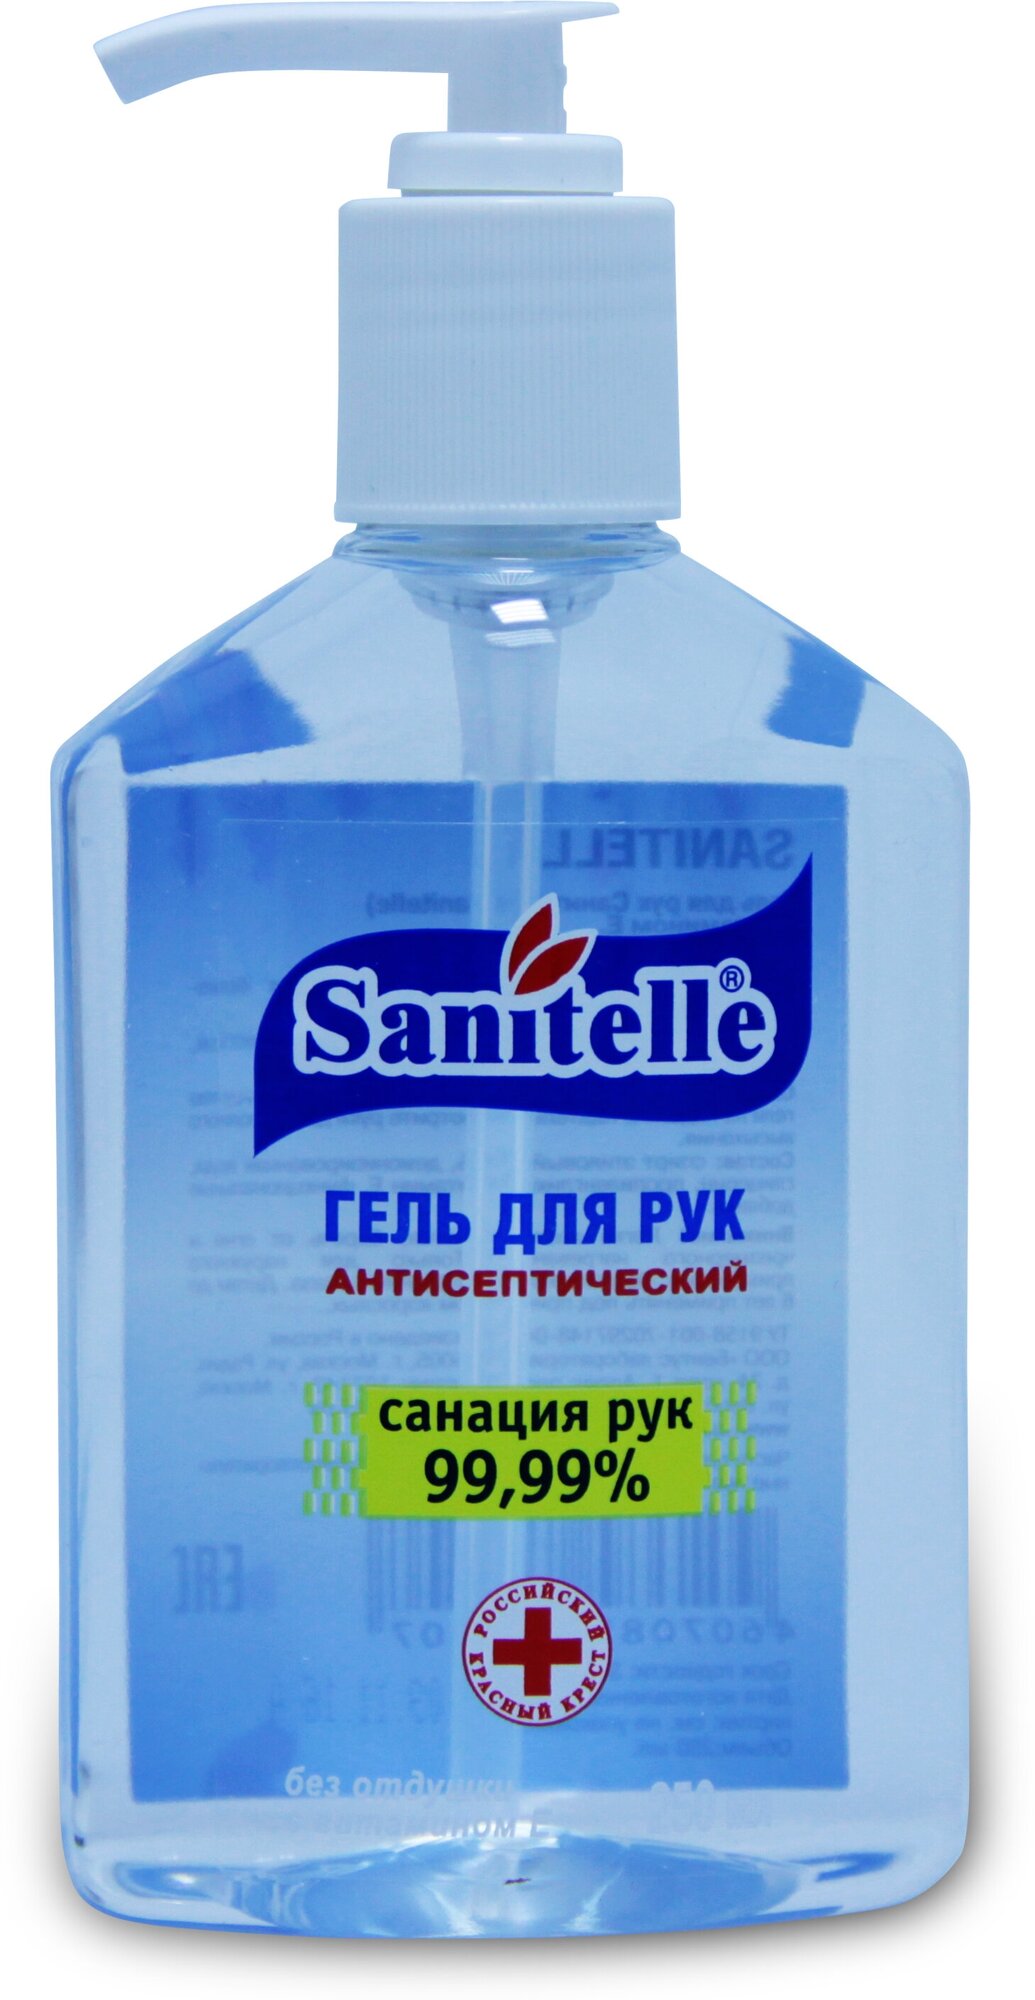 Гель Sanitelle (Санитель) для рук антисептический детский С витамином Е без запаха 250 мл Бентус лаборатории ООО - фото №8